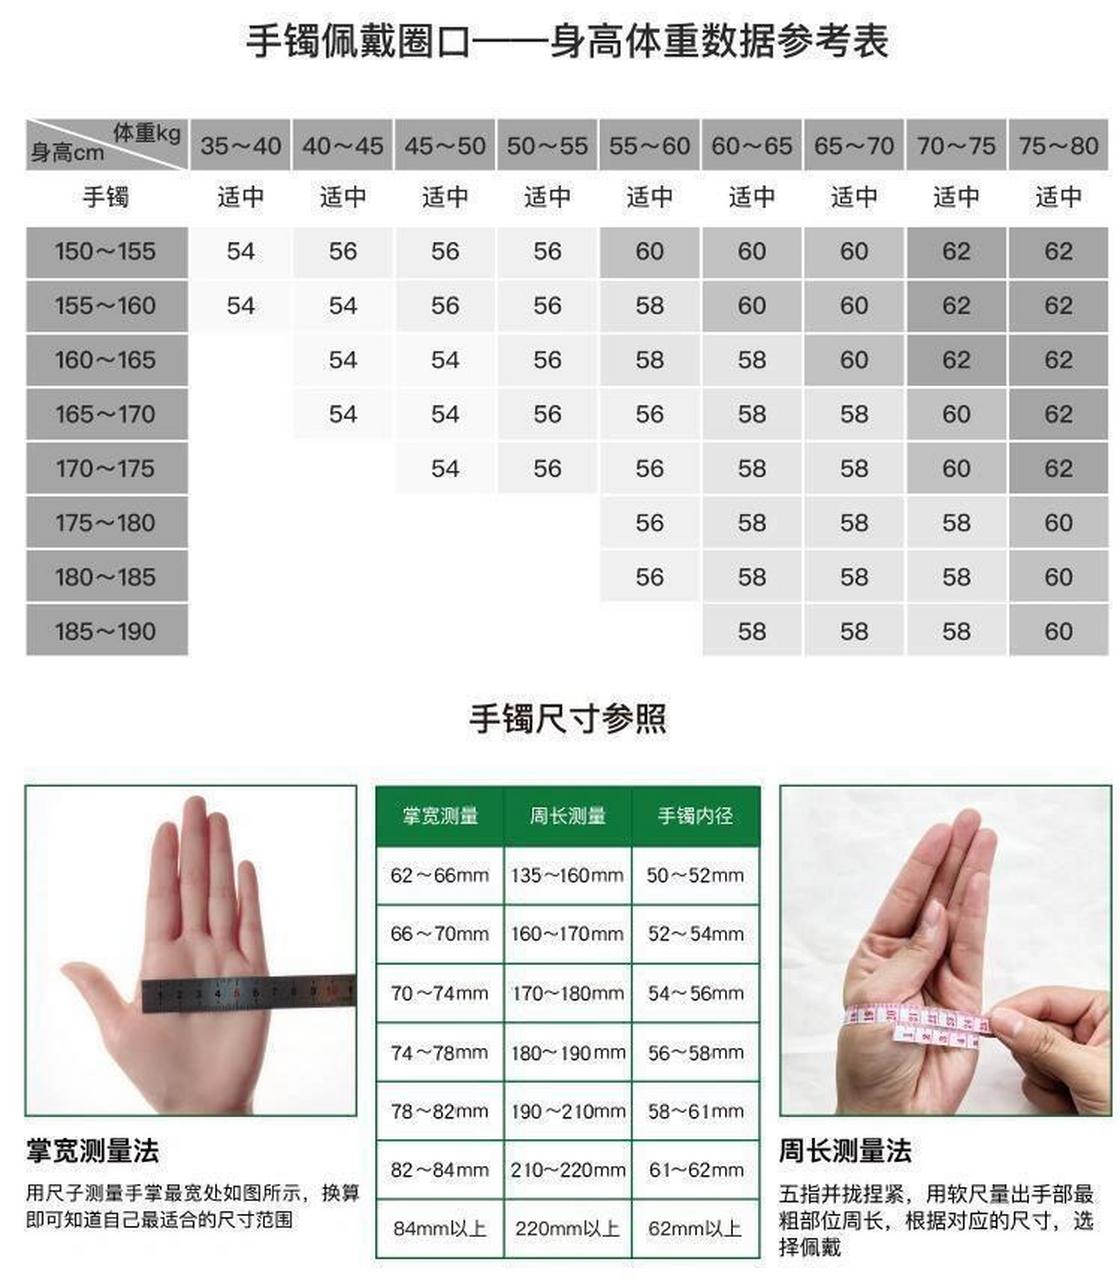 怎么测量自己戴多大圈口的手镯 如图所示,需要先量自己的掌宽,放松量